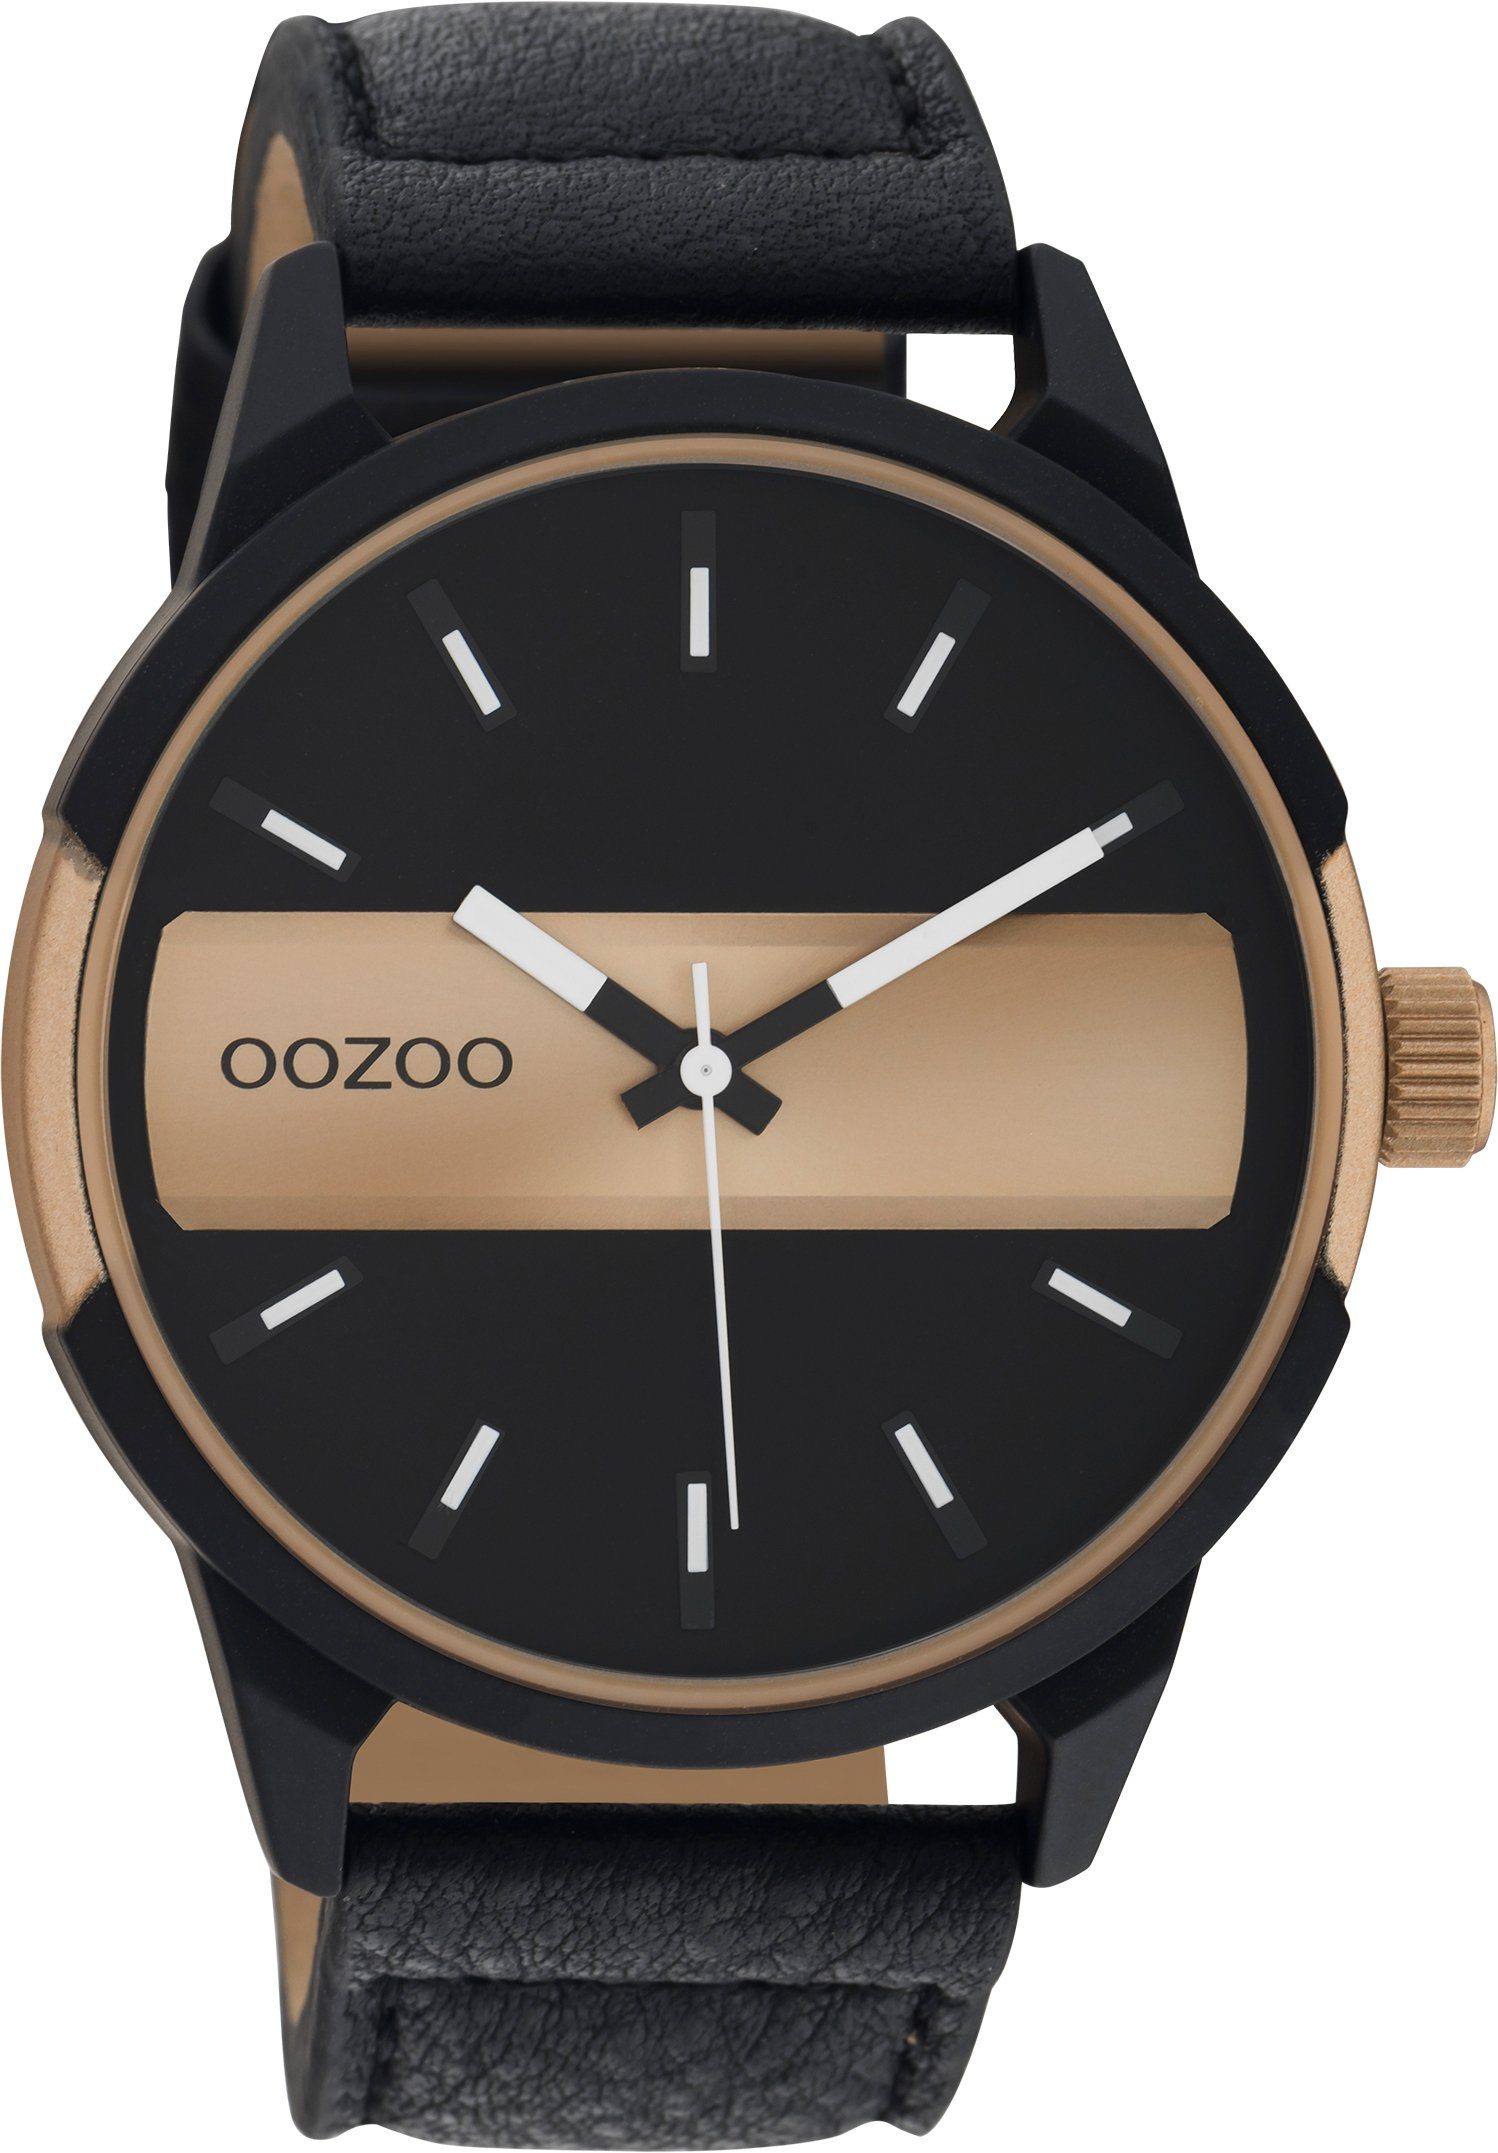 OOZOO Quarzuhr C11001, Metallgehäuse, schwarz-champagnerfarben  IP-beschichtet, Ø ca. 48 mm